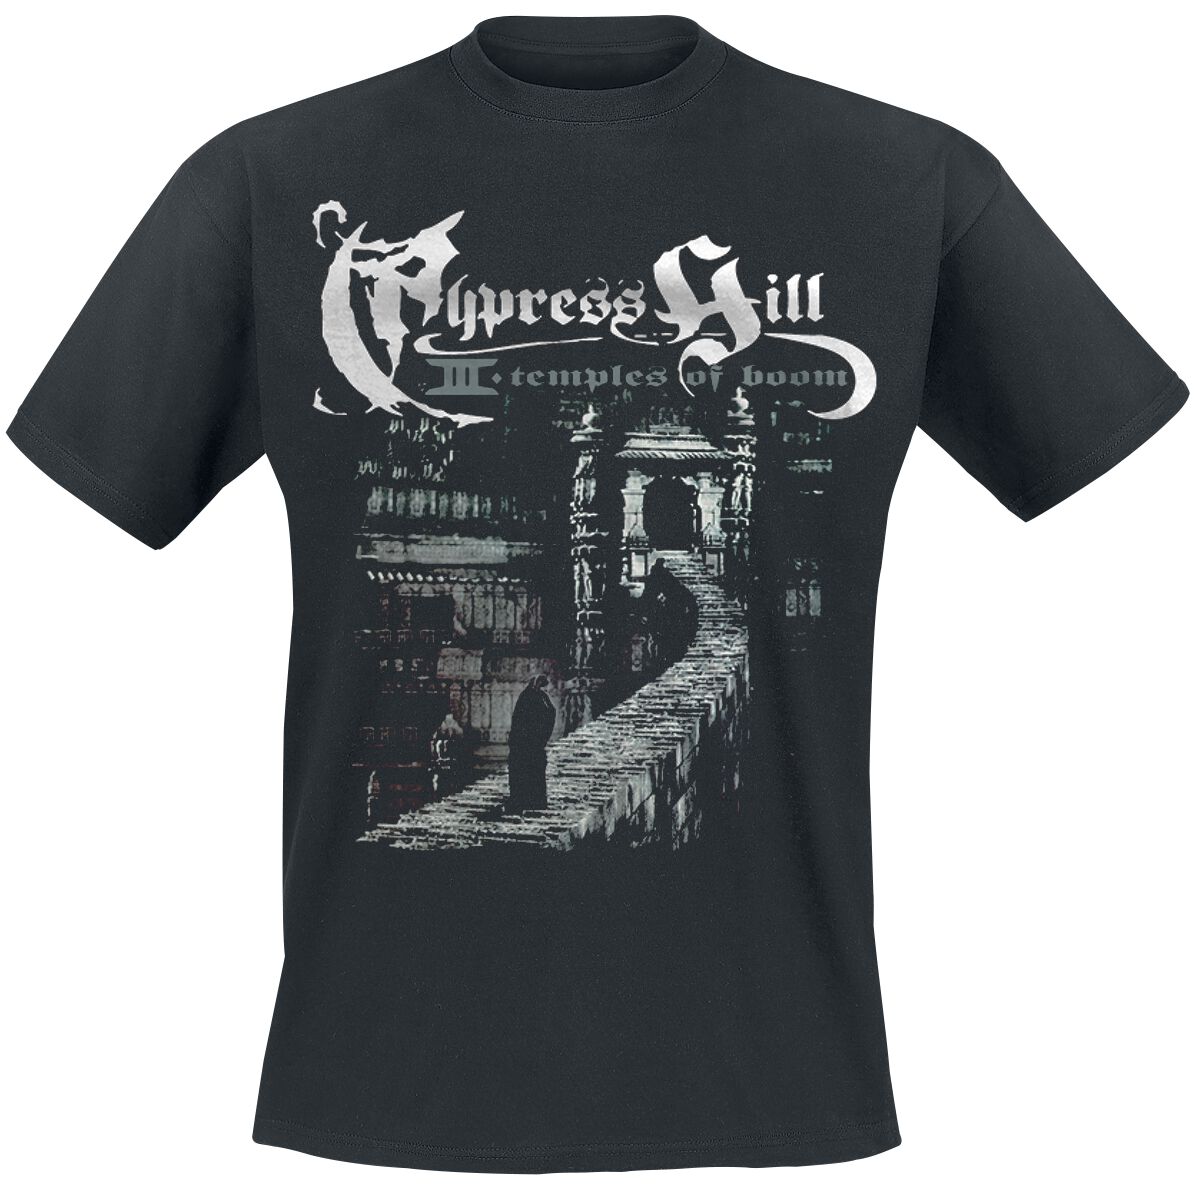 Cypress Hill T-Shirt - Temple Of Boom - S bis 5XL - für Männer - Größe 4XL - schwarz  - Lizenziertes Merchandise!